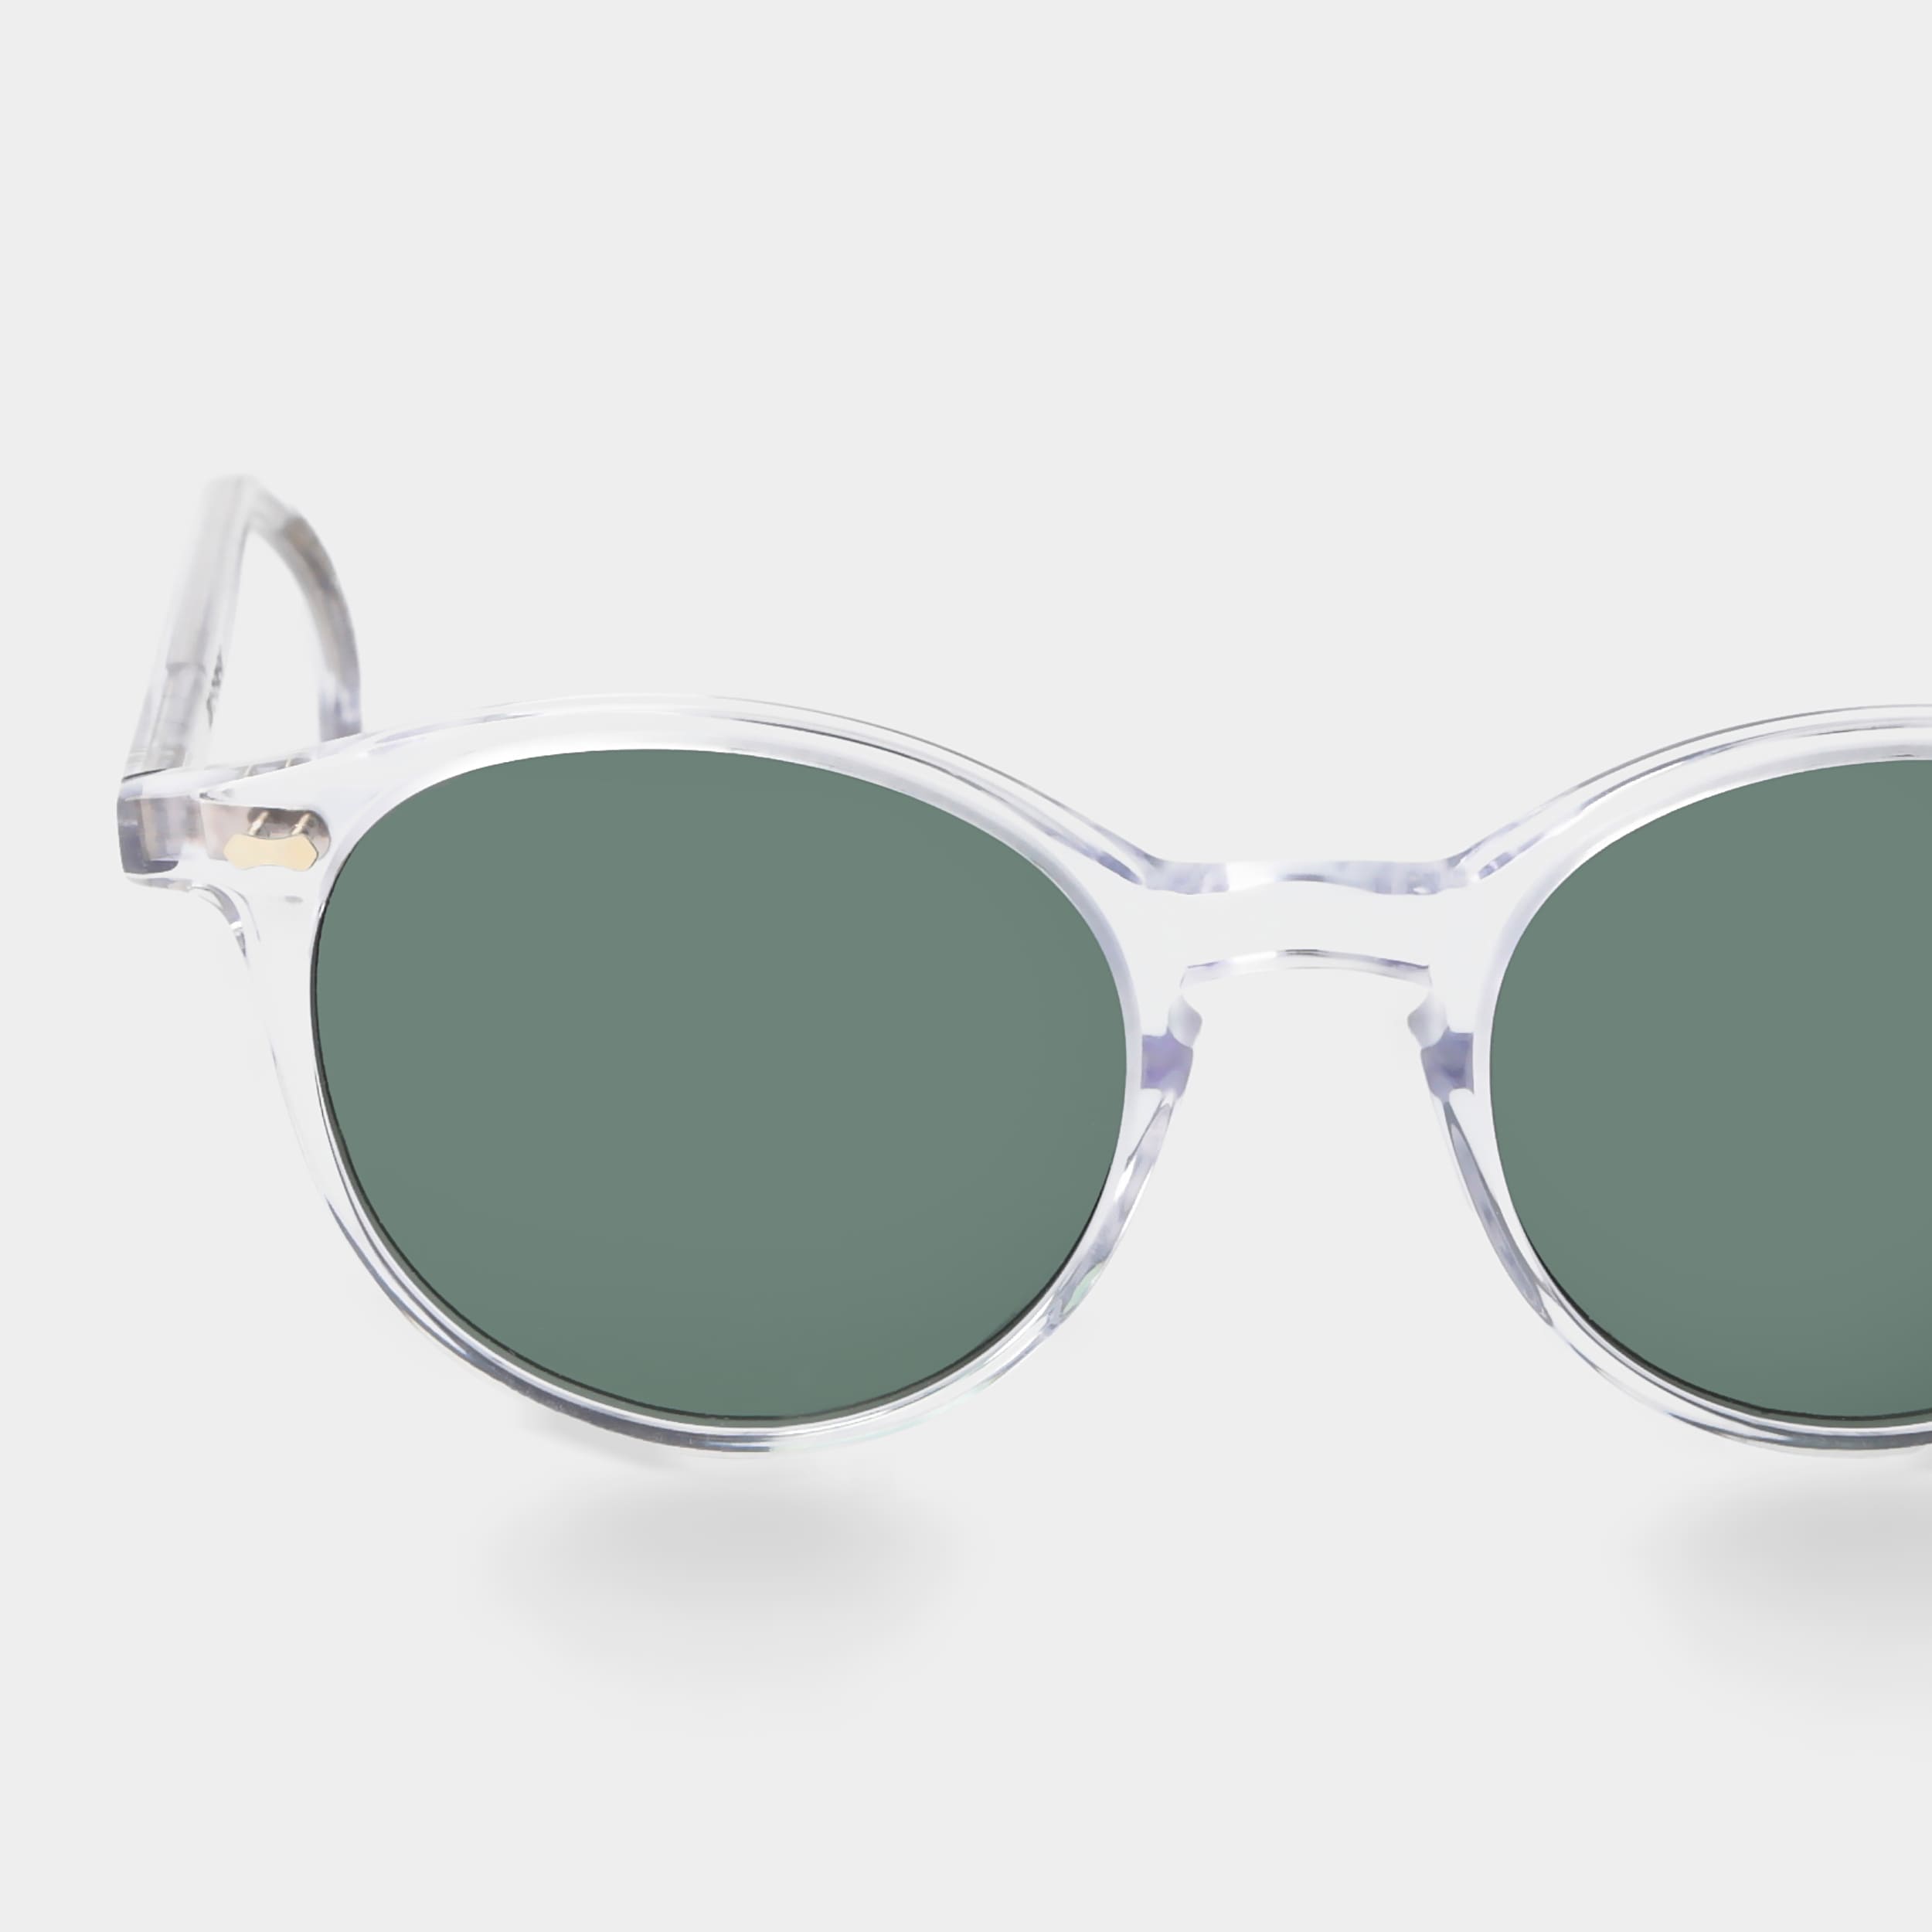 | Eyewear Sonnenbrille Gläsern TBD mit klarem Rahmen und polarisierten